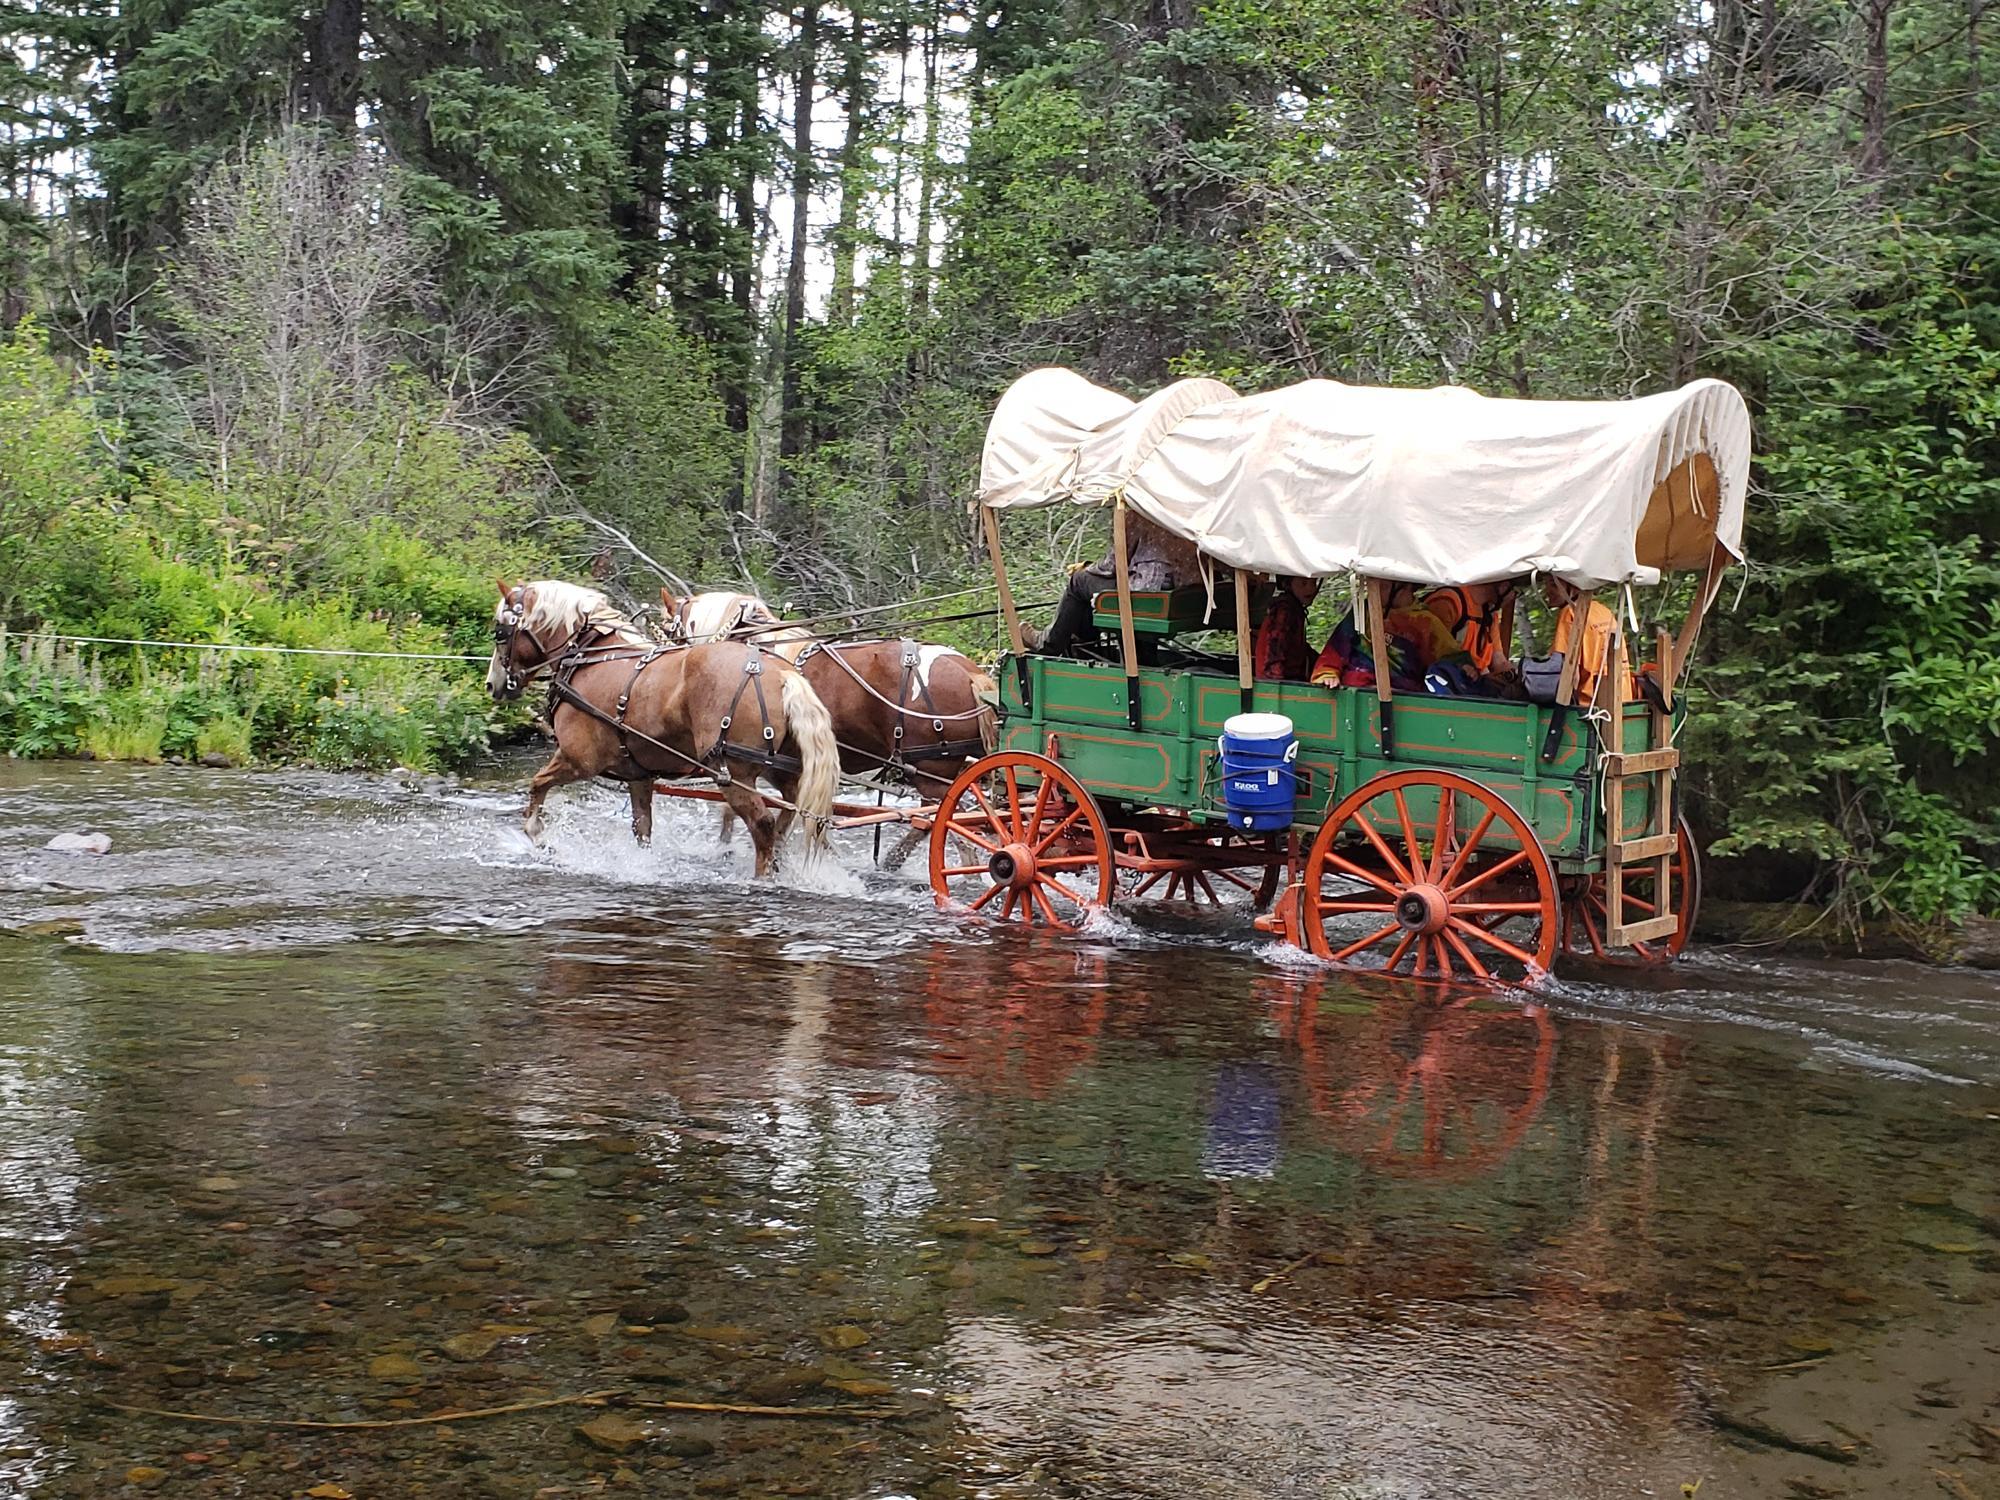 4-H wagon train